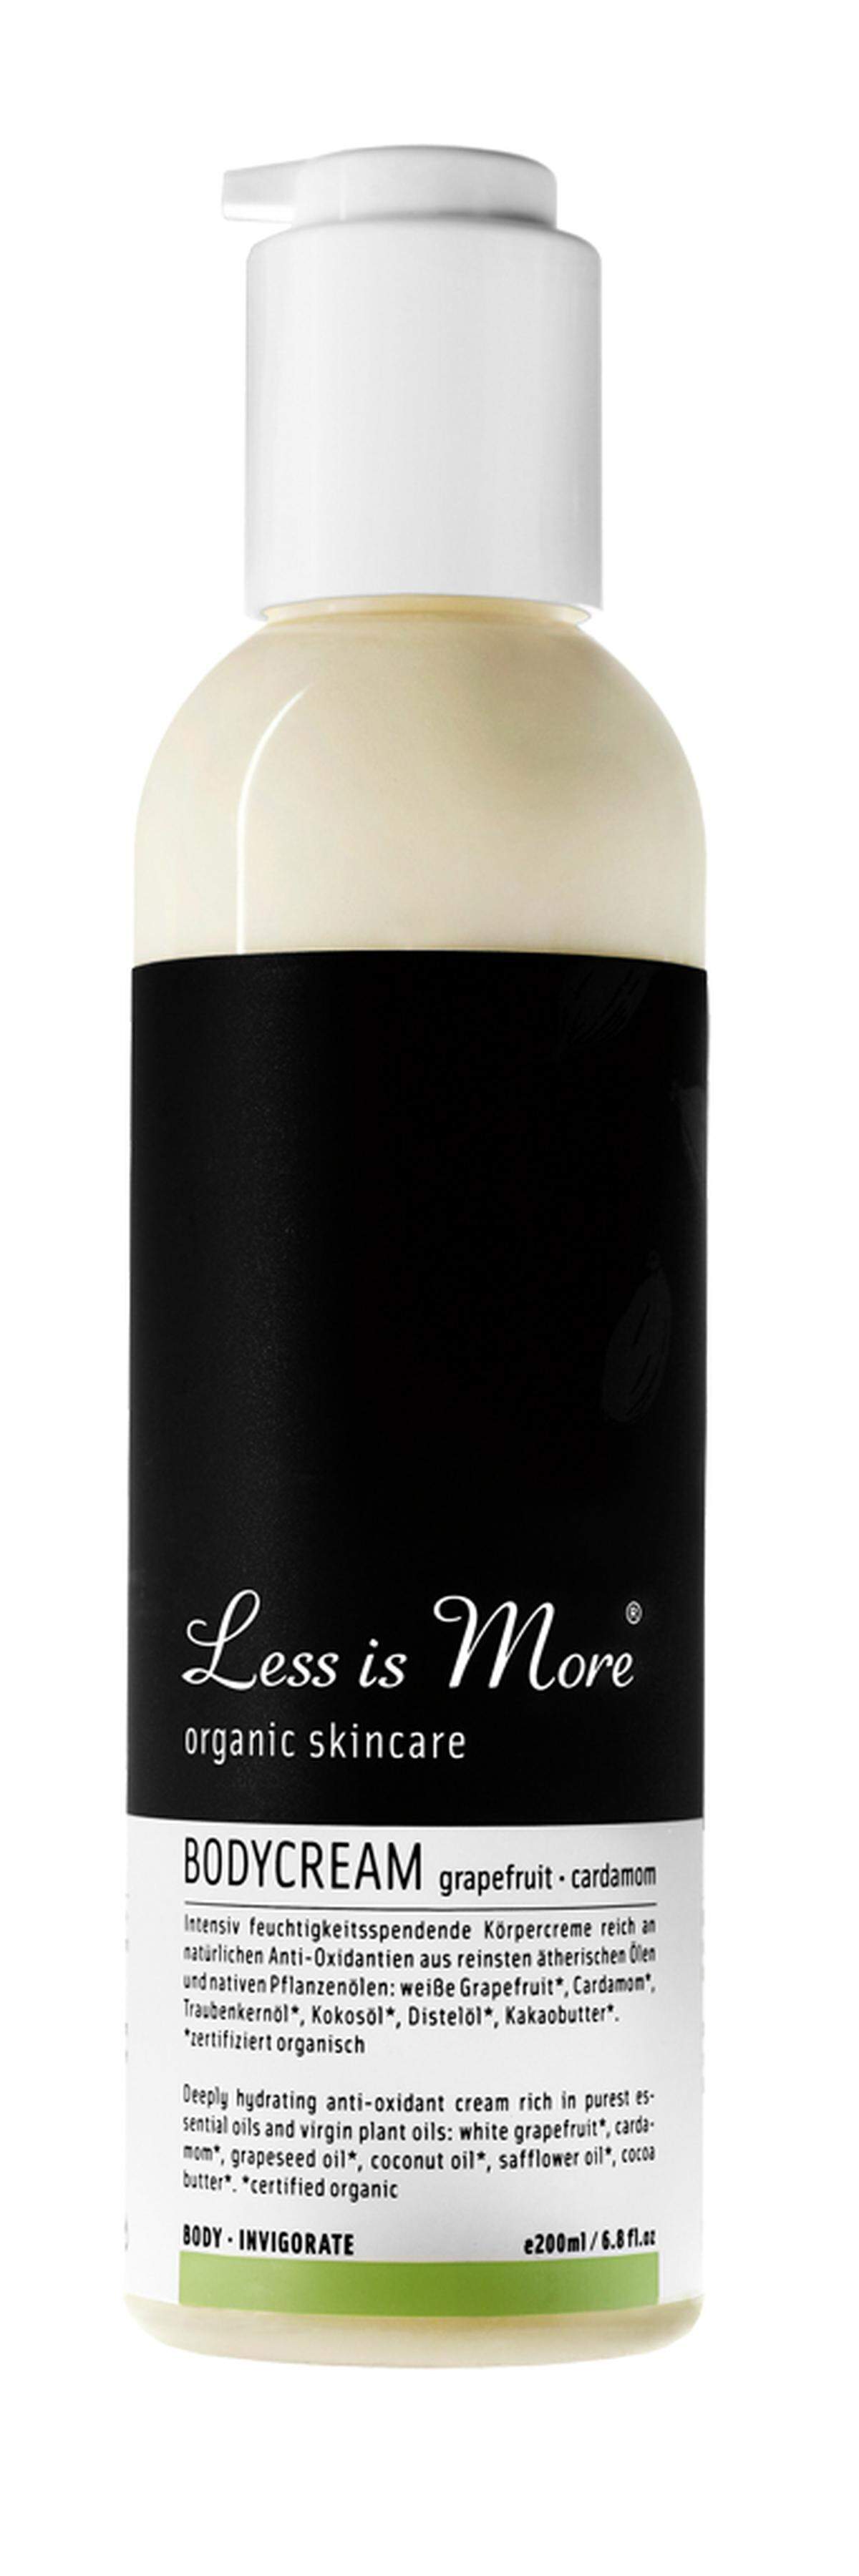 Nach Grapefruit und Kardamom duftet die Körpercreme von Less Is More, erhältlich via www.lessismore.at um 38 Euro.